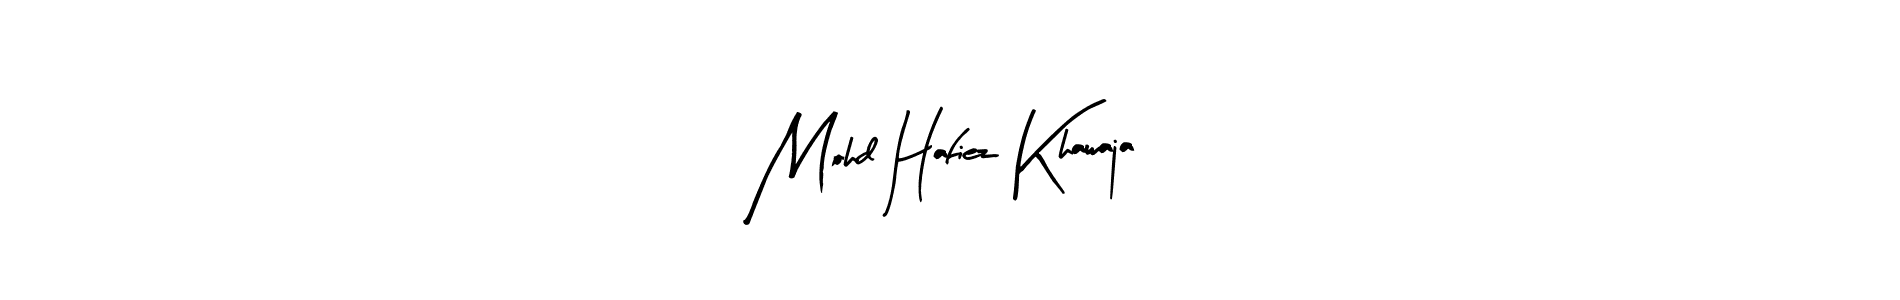 How to Draw Mohd Hafiez Khawaja signature style? Arty Signature is a latest design signature styles for name Mohd Hafiez Khawaja. Mohd Hafiez Khawaja signature style 8 images and pictures png